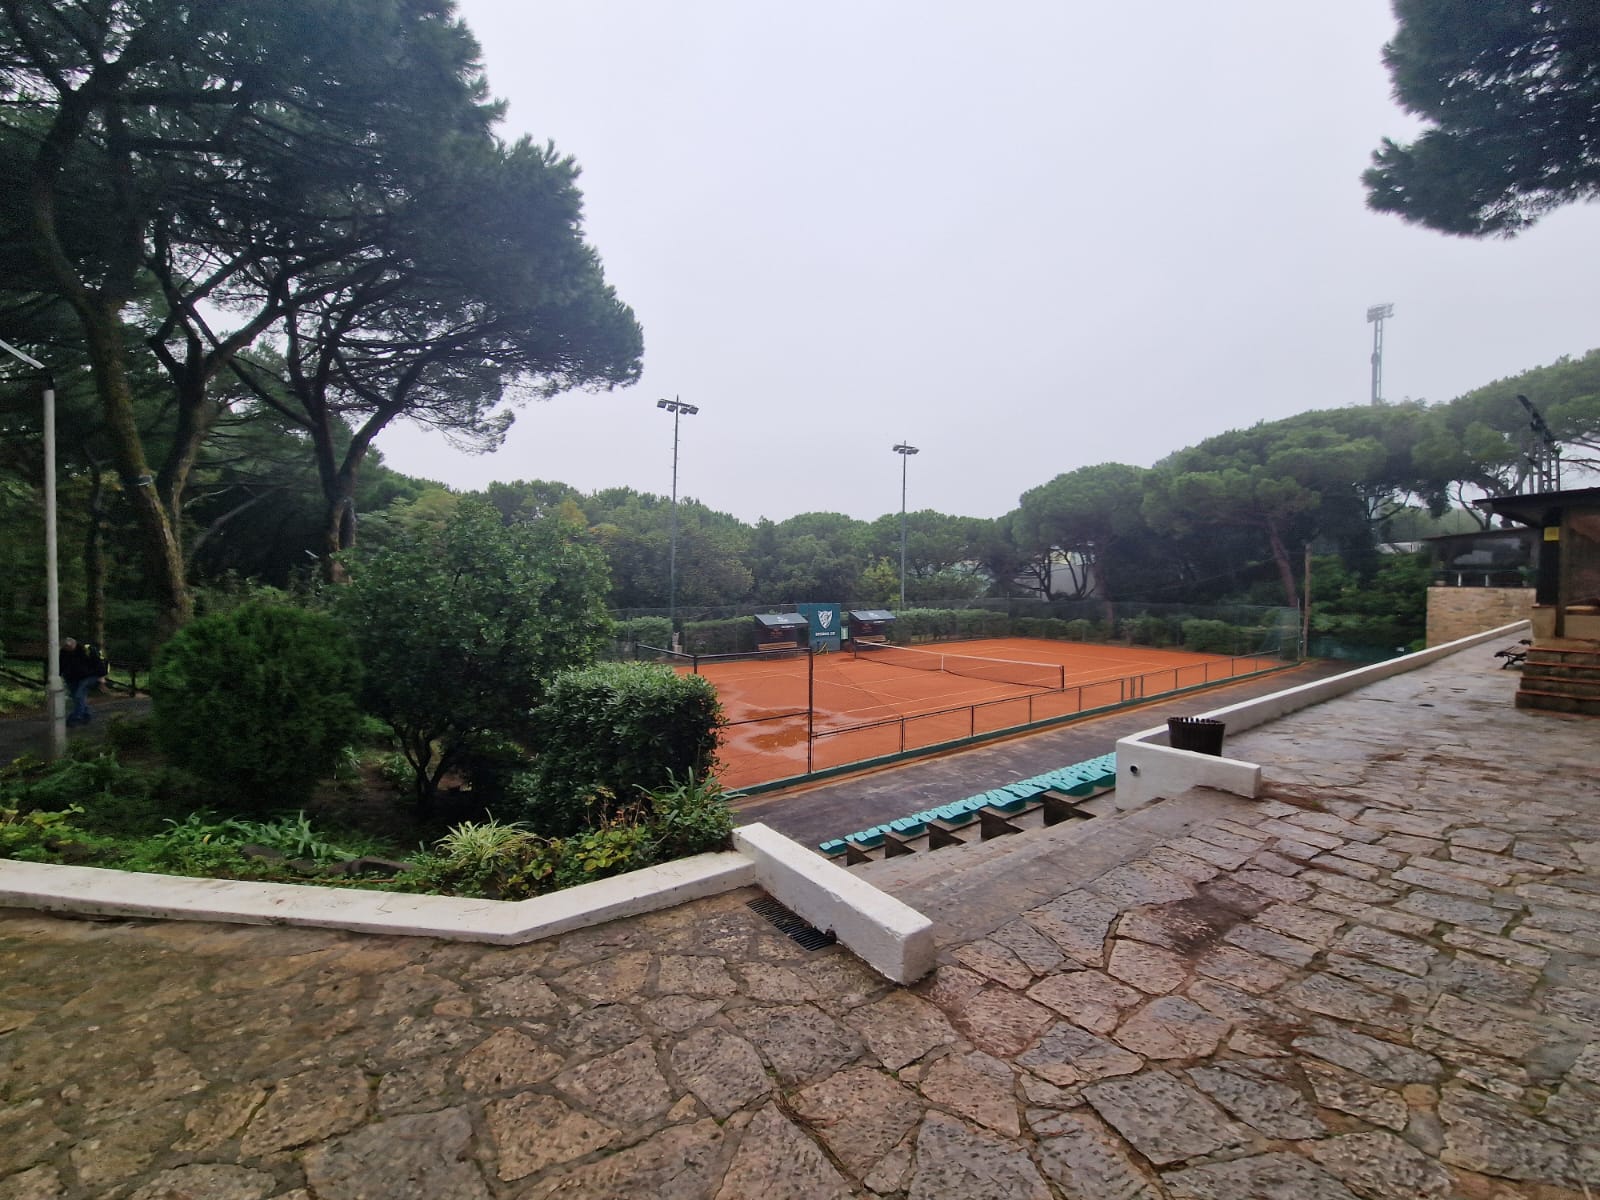 Tennis venue